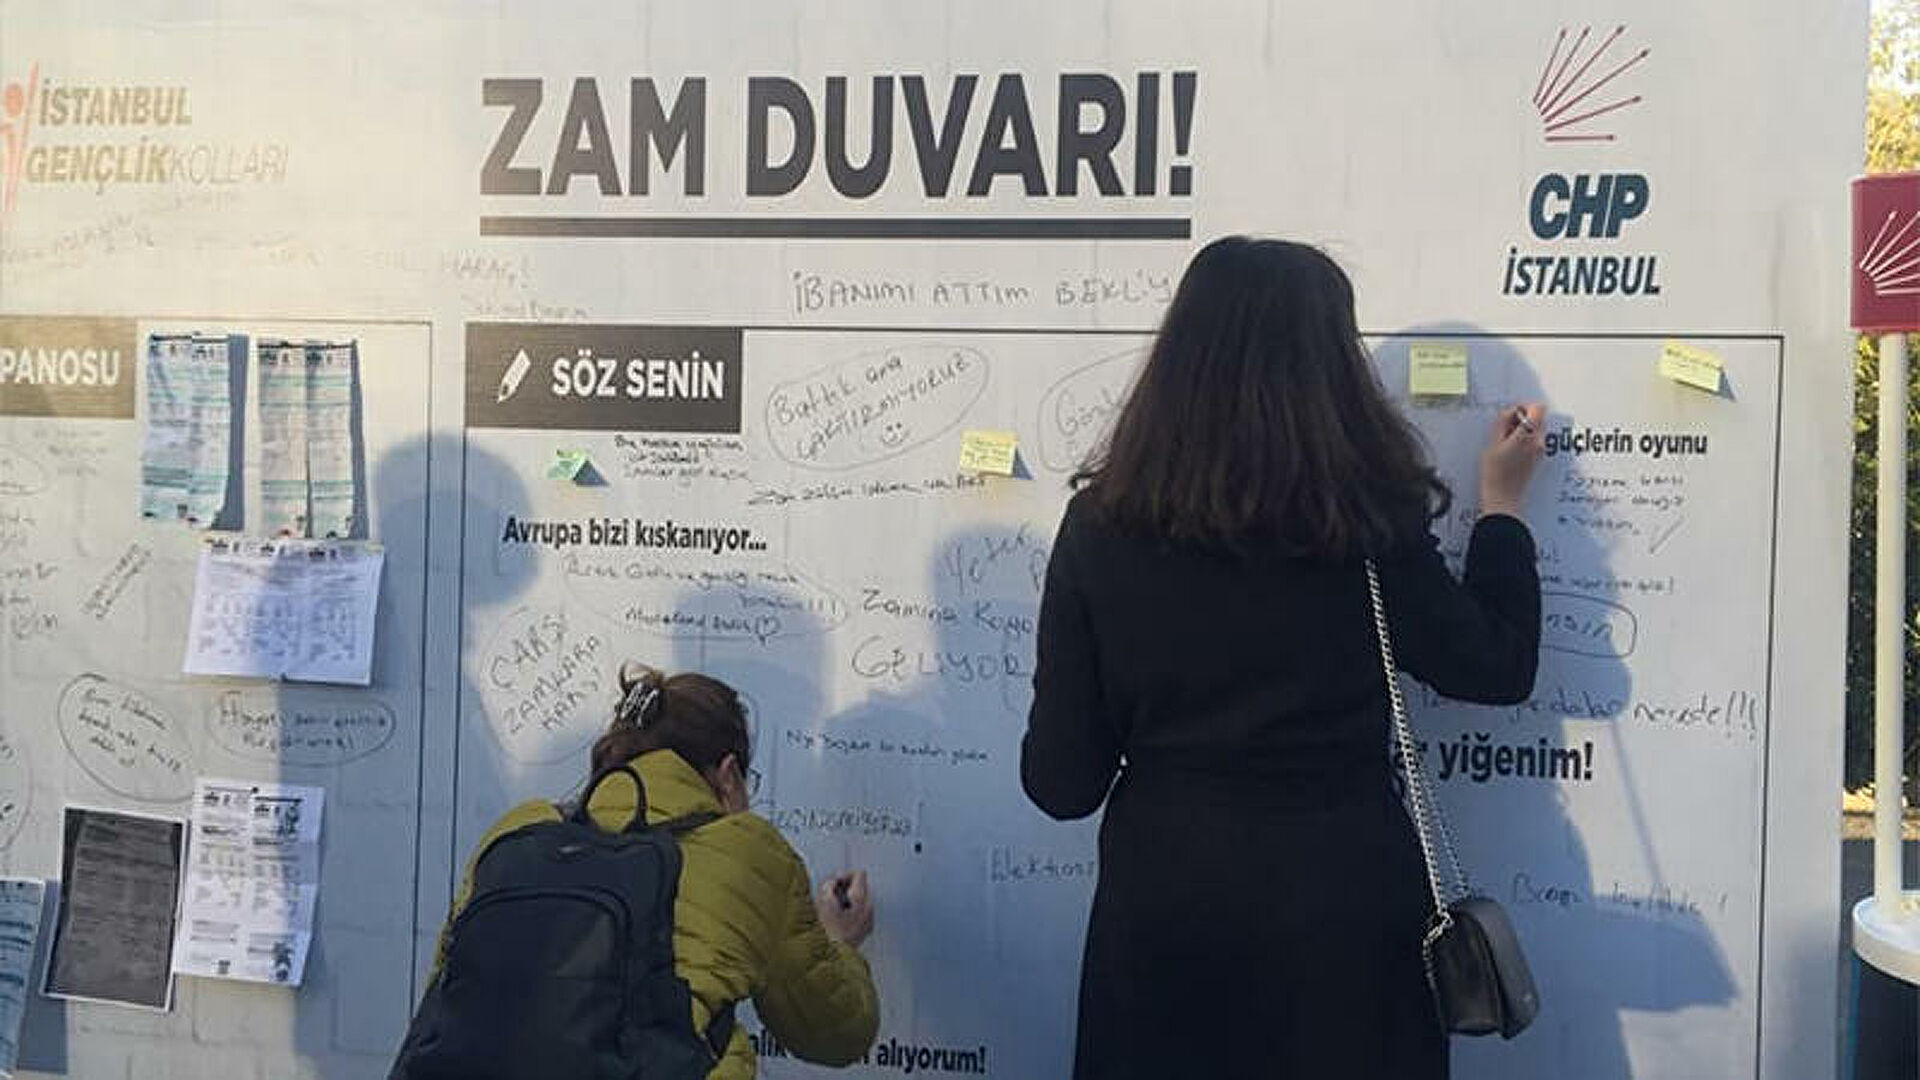 CHP, İstanbul’un tüm meydanlarında ‘zam duvarı’ açtı